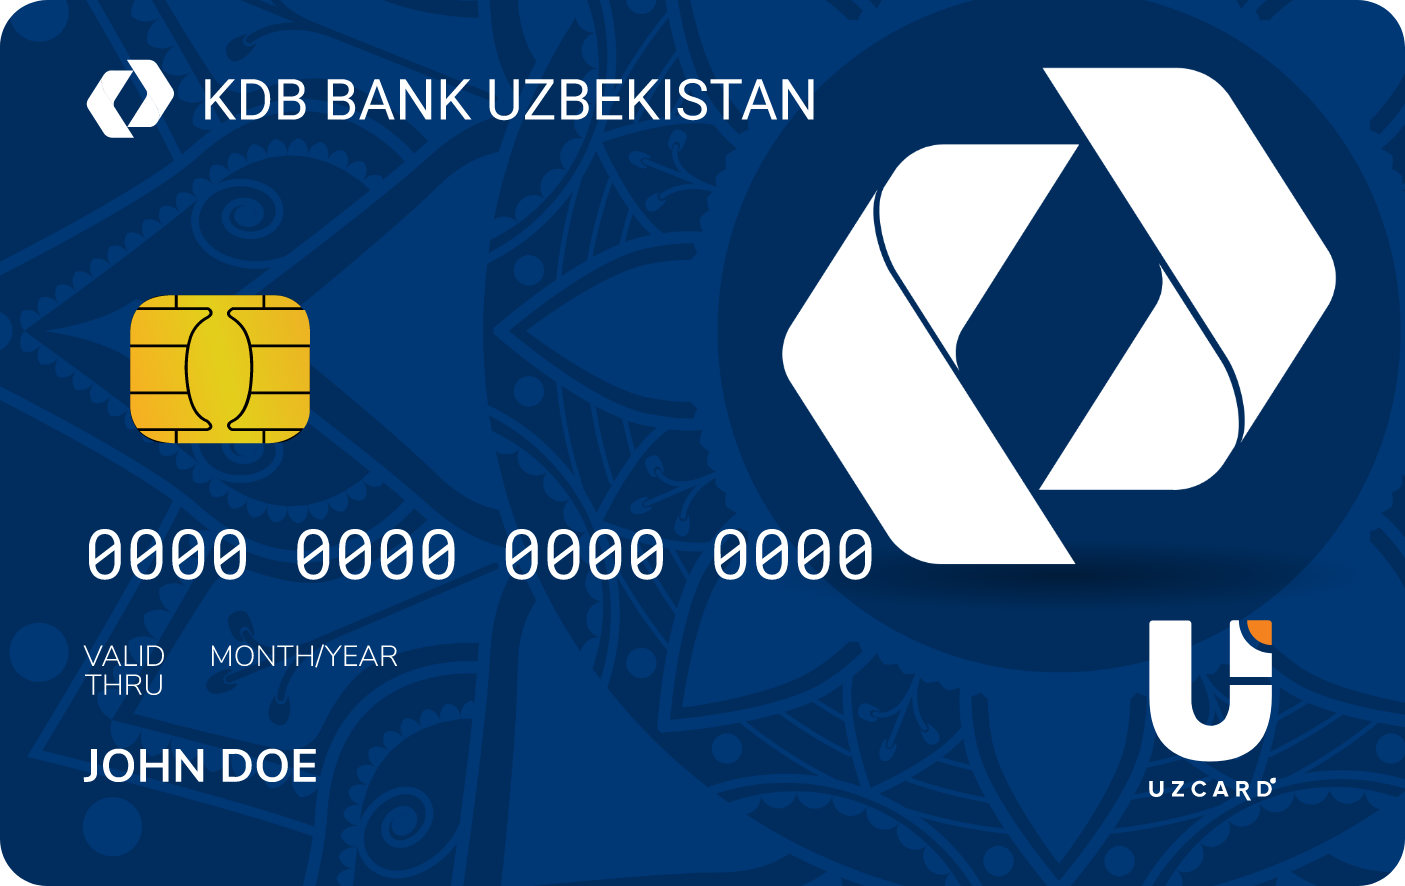 Карта капитал банк узбекистан